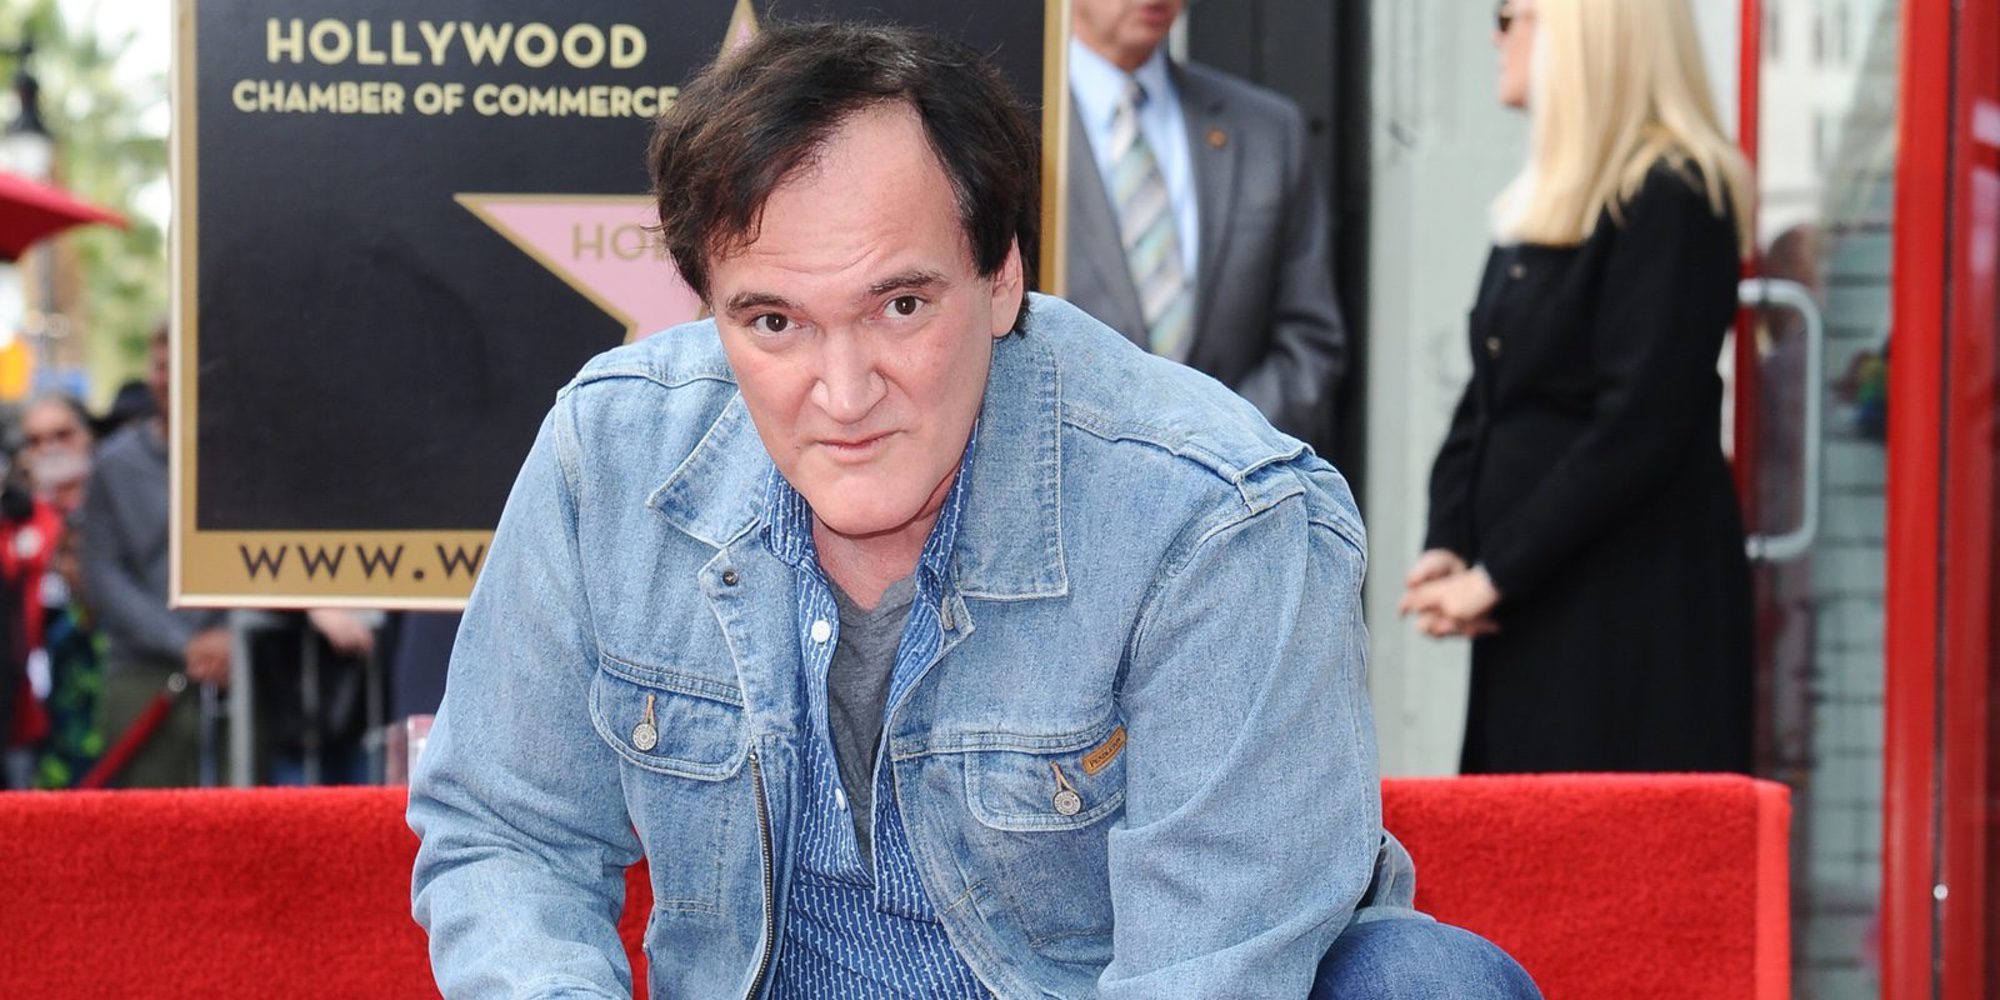 Quentin Tarantino conocía los abusos sexuales de Harvey Weinstein: "Debería haber hecho más de lo que hice"